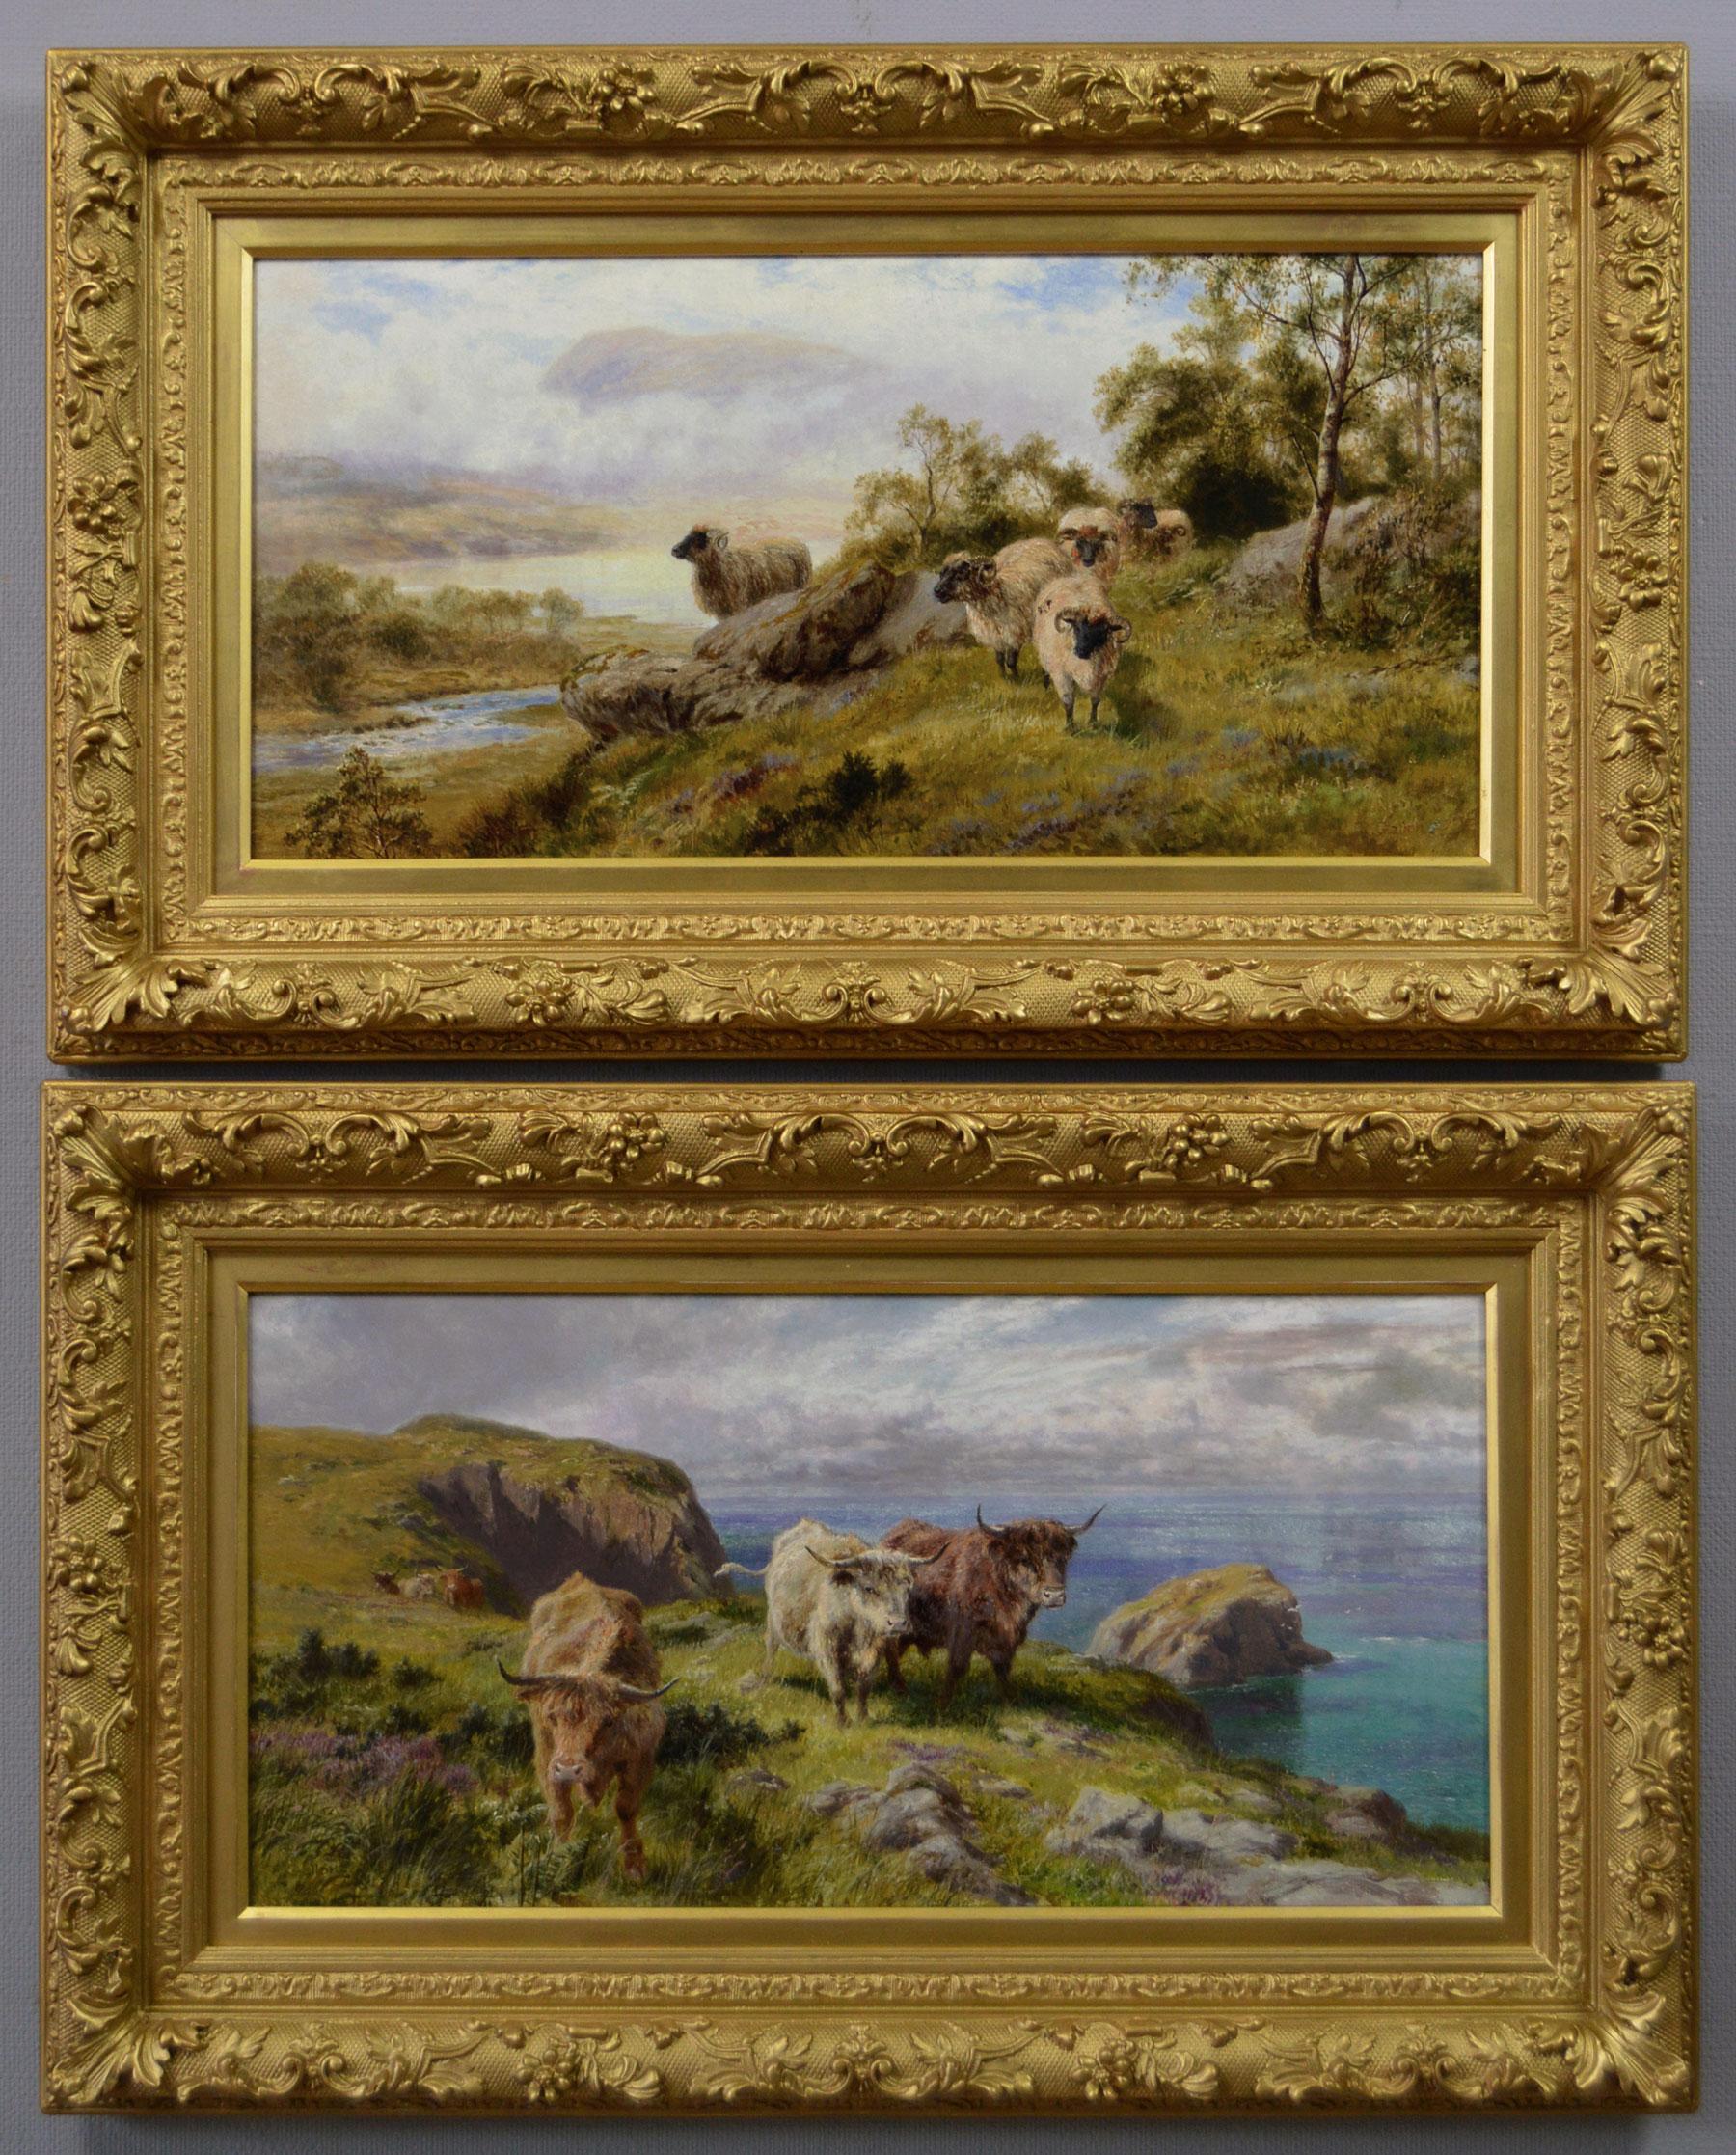 Landscape Painting Robert Gallon - Paire de peintures à l'huile écossaises du 19e siècle représentant des moutons et du bétail